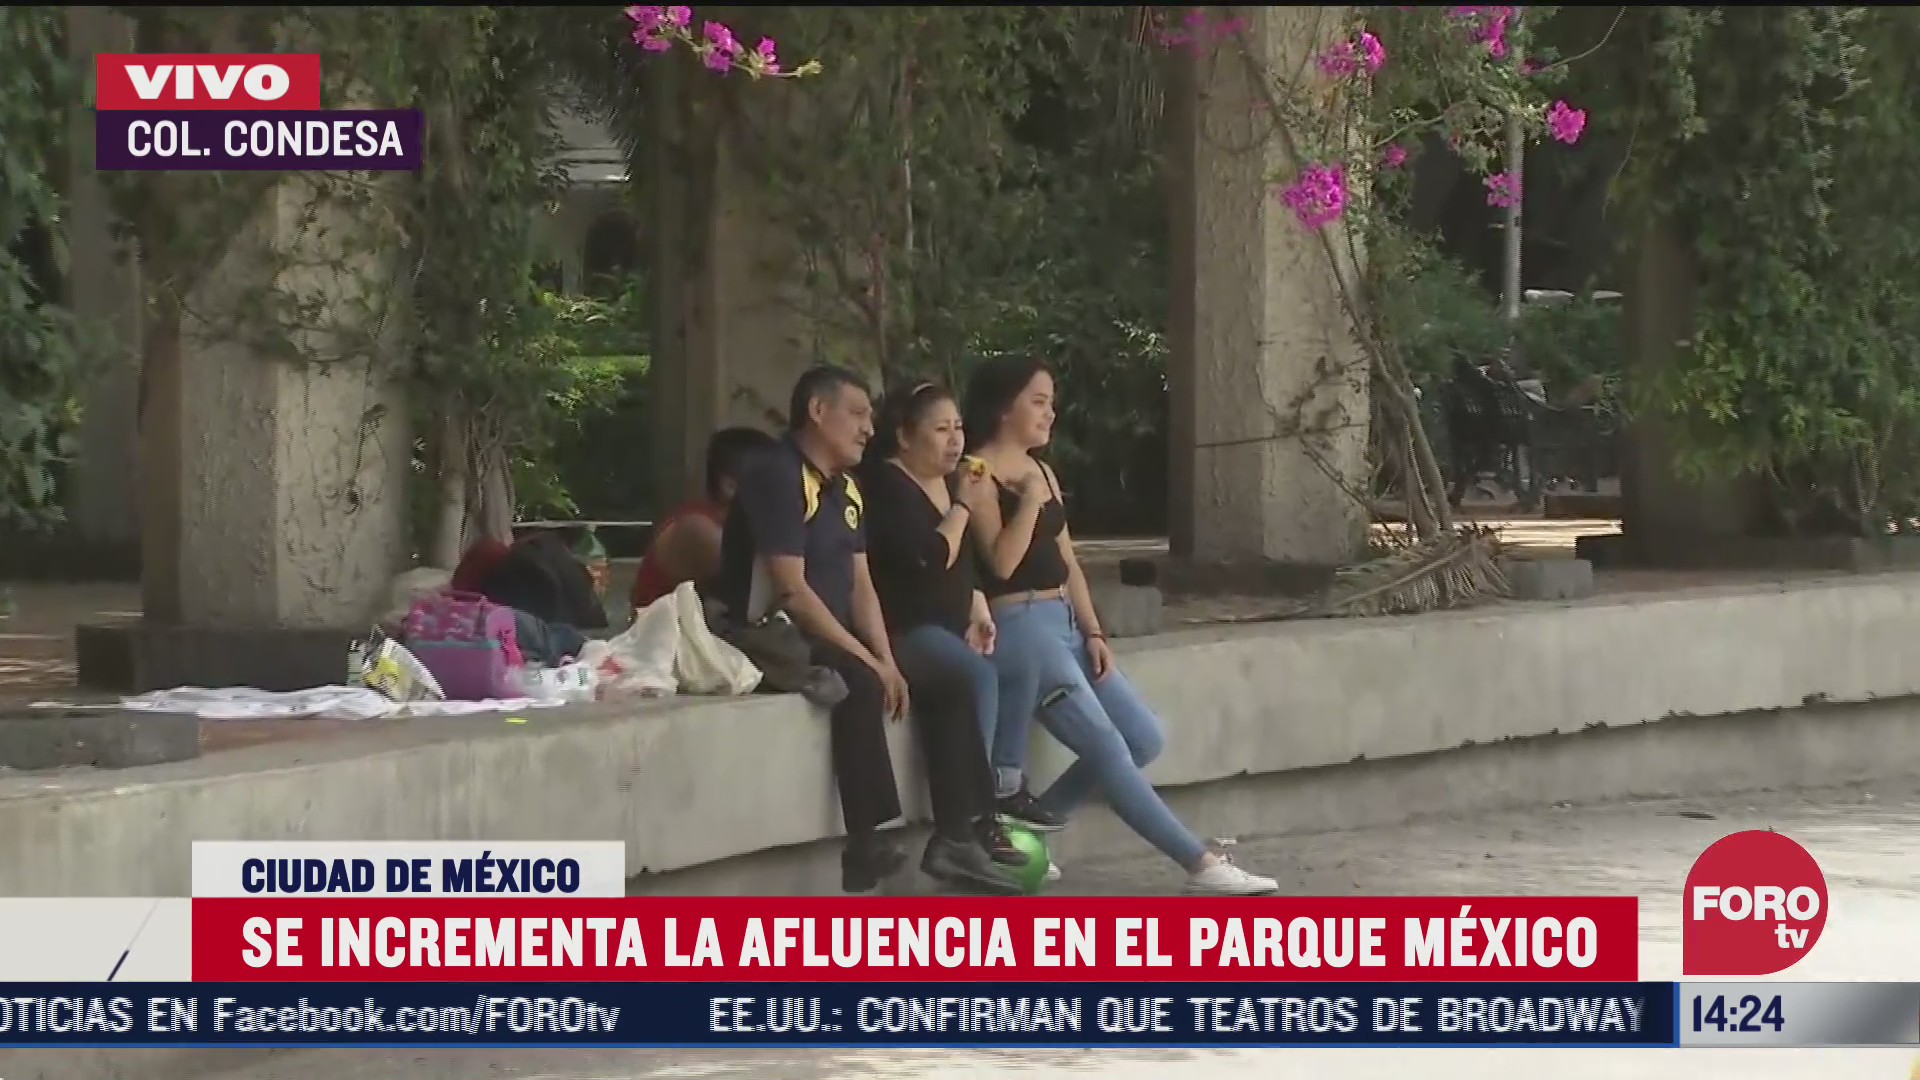 ciudadanos visitan el parque mexico sin cubrebocas ni sana distancia